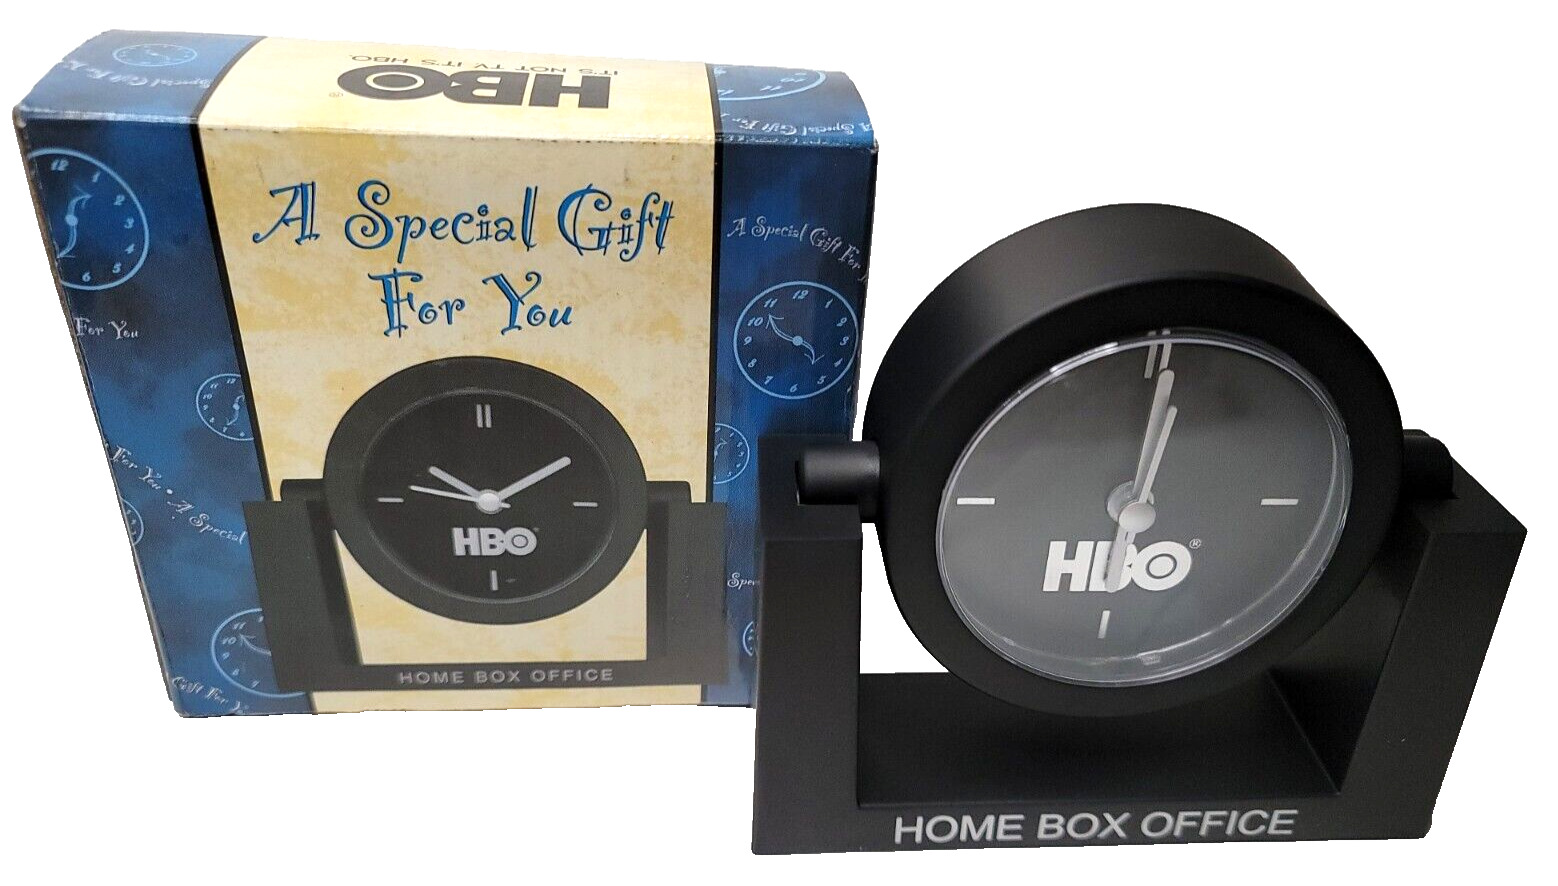 HBO Clock 1998 Desk Clock Home Box Office Gift Clock Time Warner VTG Brand New 